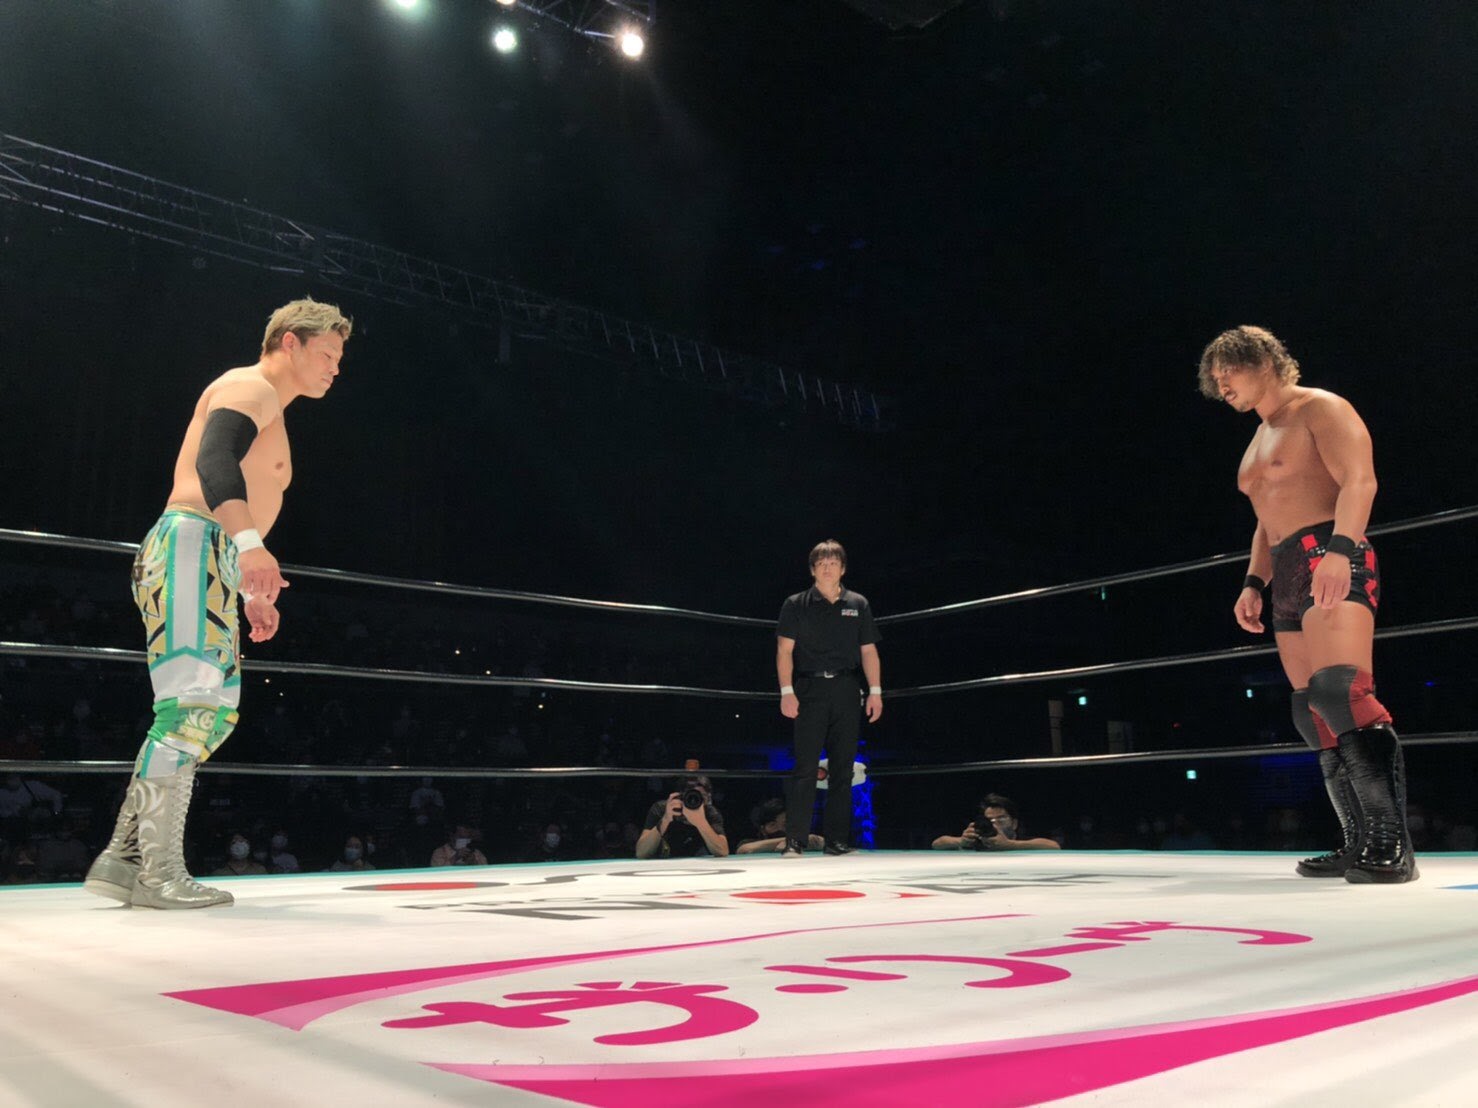 Shiozaki and Nakajima, facing each other across the ring at the Yokahama Budokan